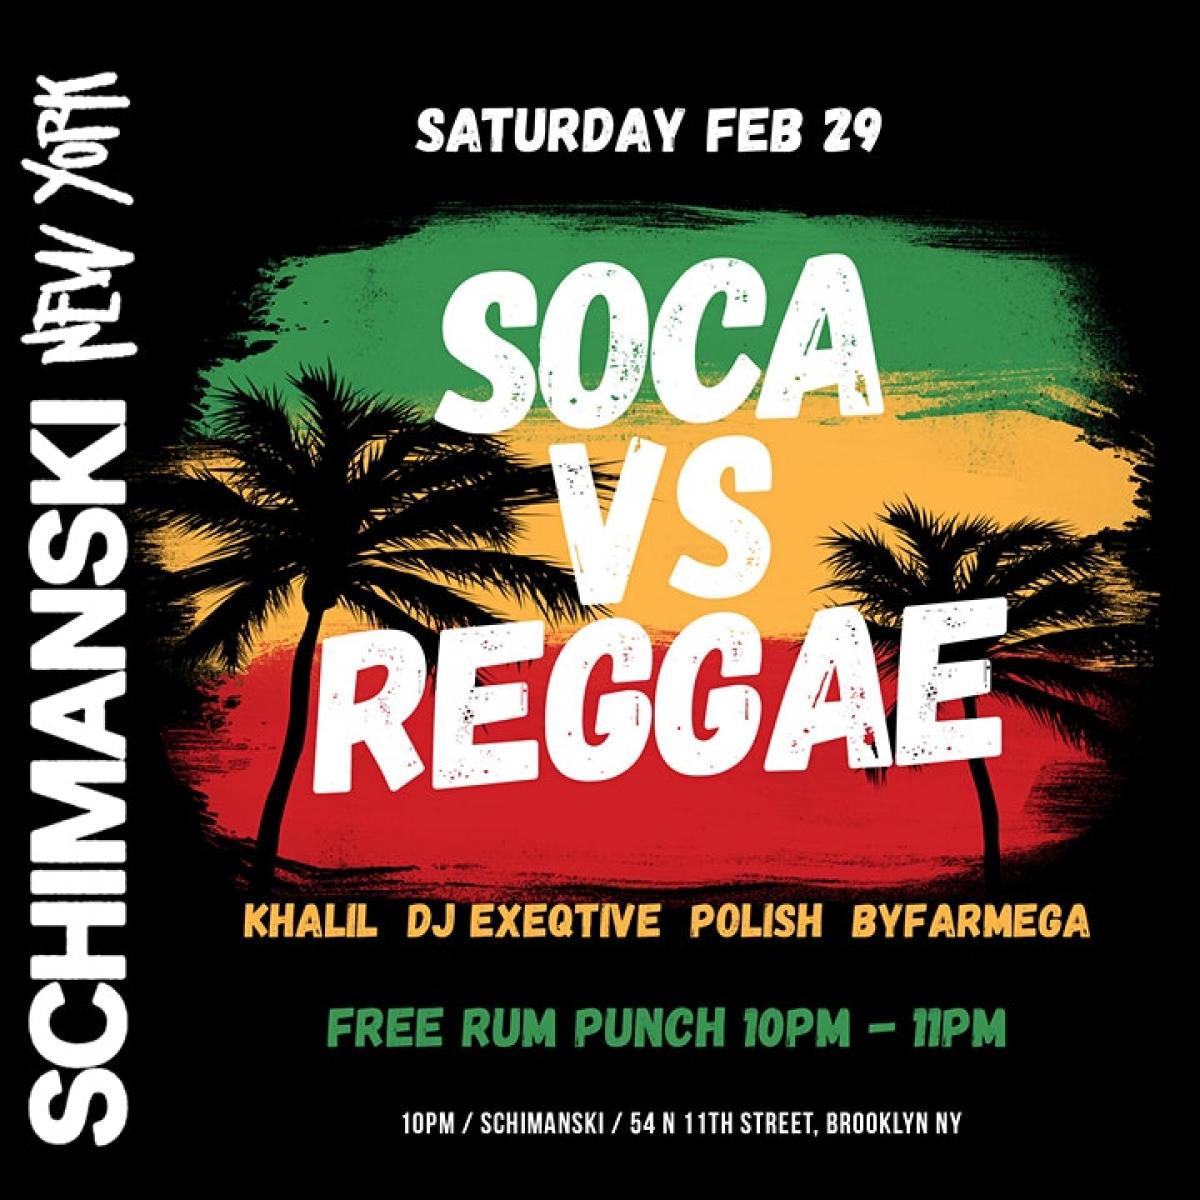 Soca vs Reggae flyer or graphic.